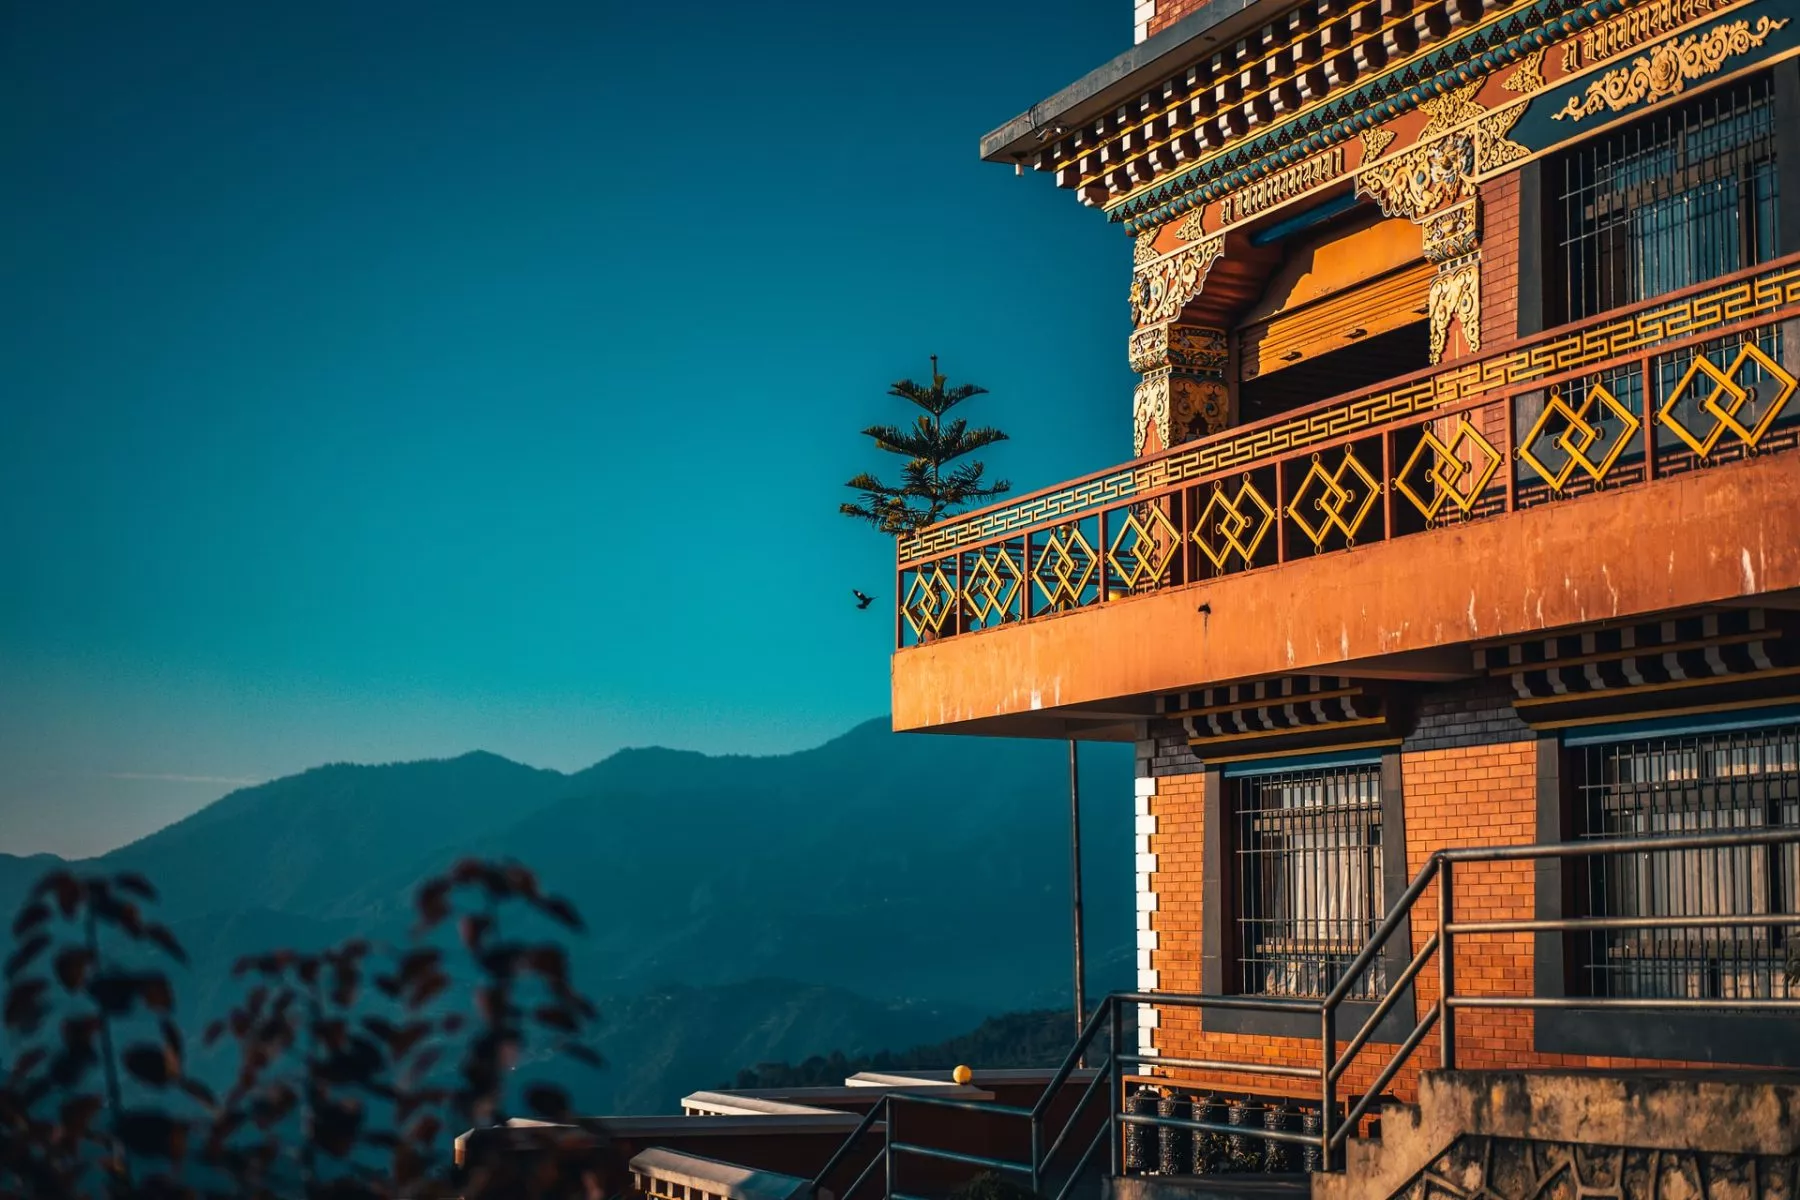 Centrale bank van Bhutan werkt samen met Ripple